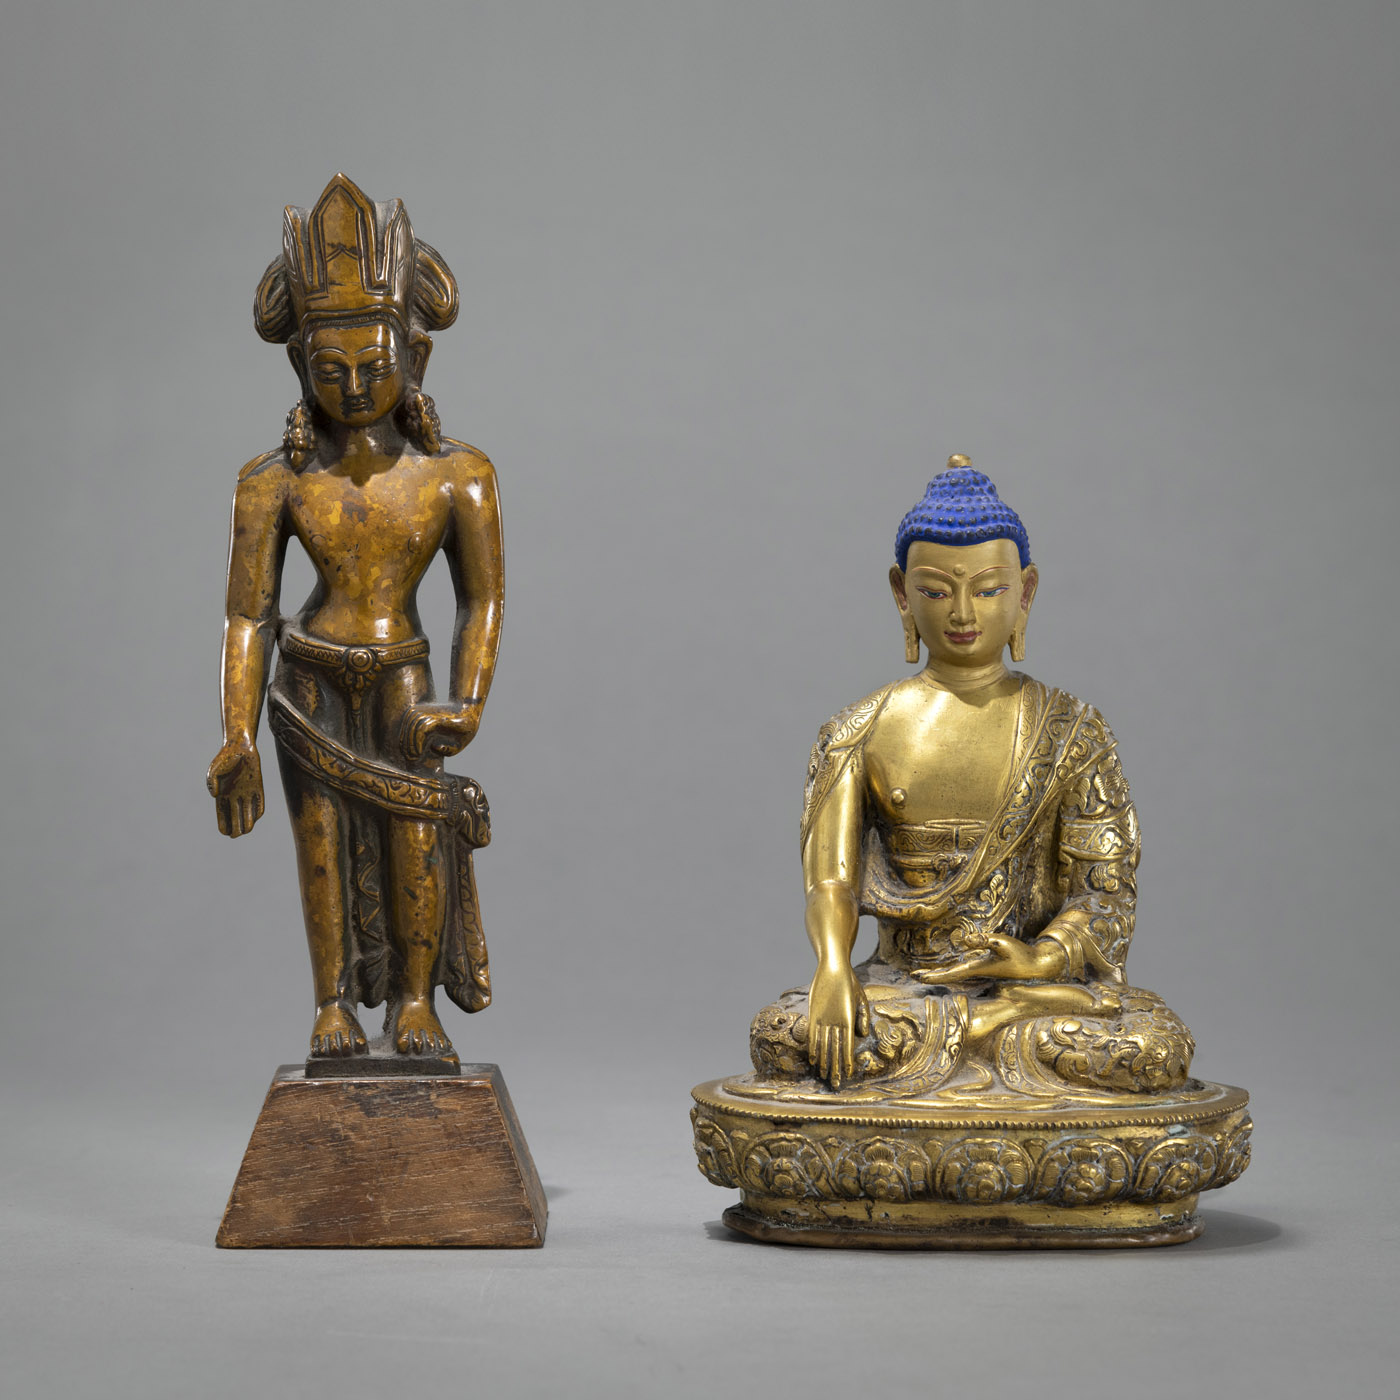 A GILT-BRONZE FIGURE OF BUDDHA SHAKYAMUNI AND A BRONZE FIGURE OF PADMAPANI IN EARLY STYLE